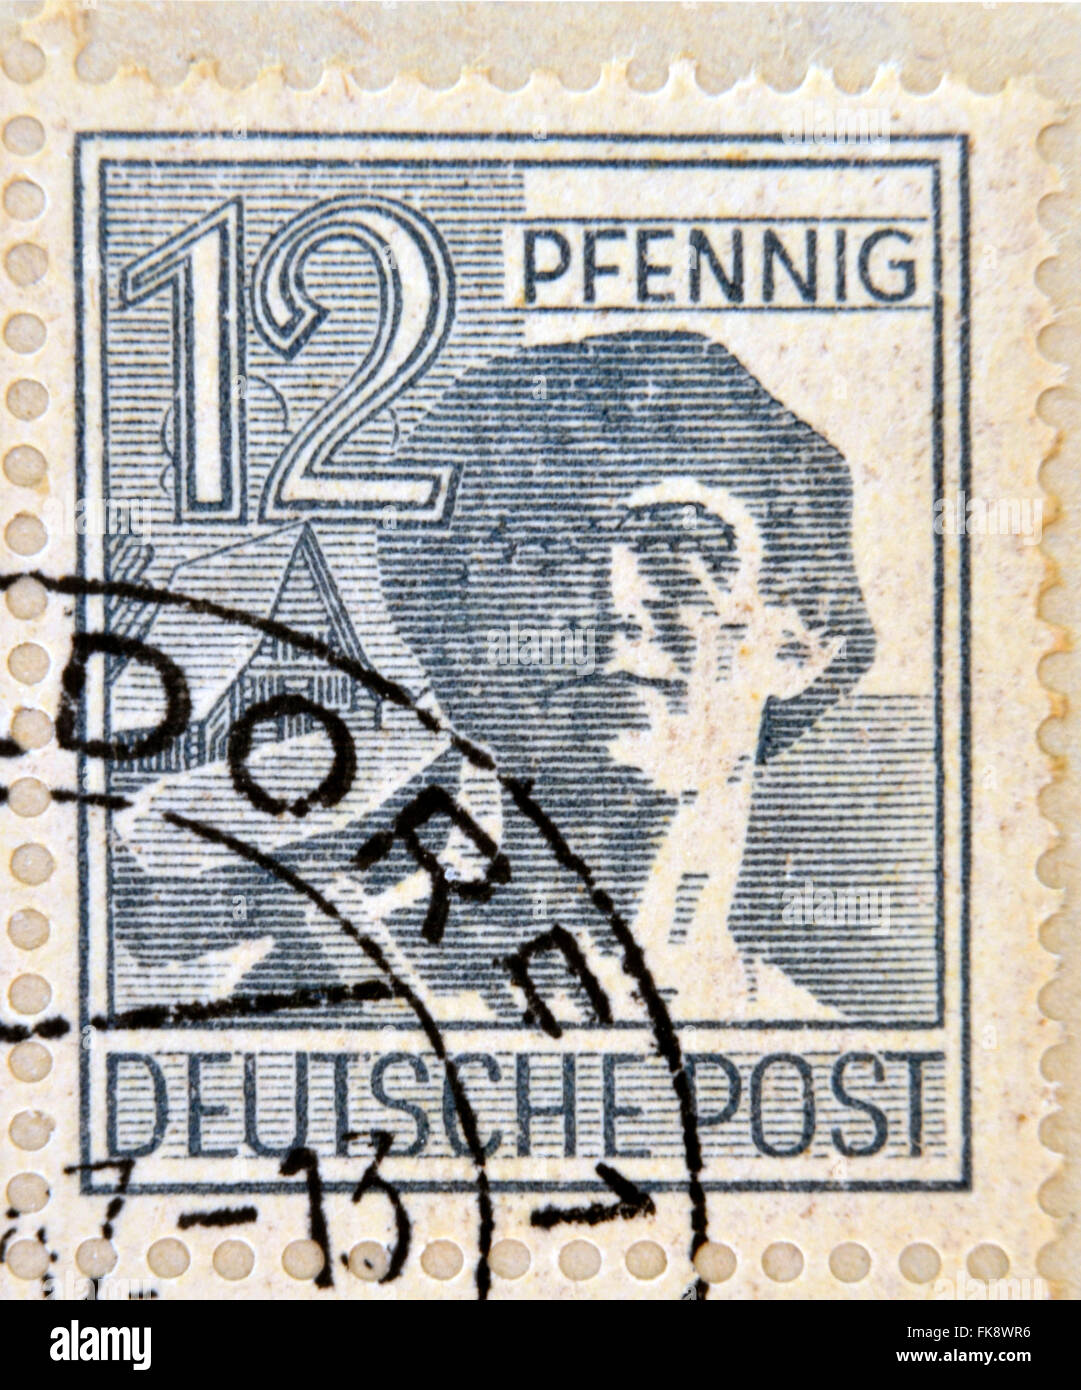 Deutschland - CIRCA 1947: Eine Briefmarke gedruckt in der Bundesrepublik Deutschland (BRD) zeigt einen Arbeiter in einem Hut, ca. 1947 Stockfoto